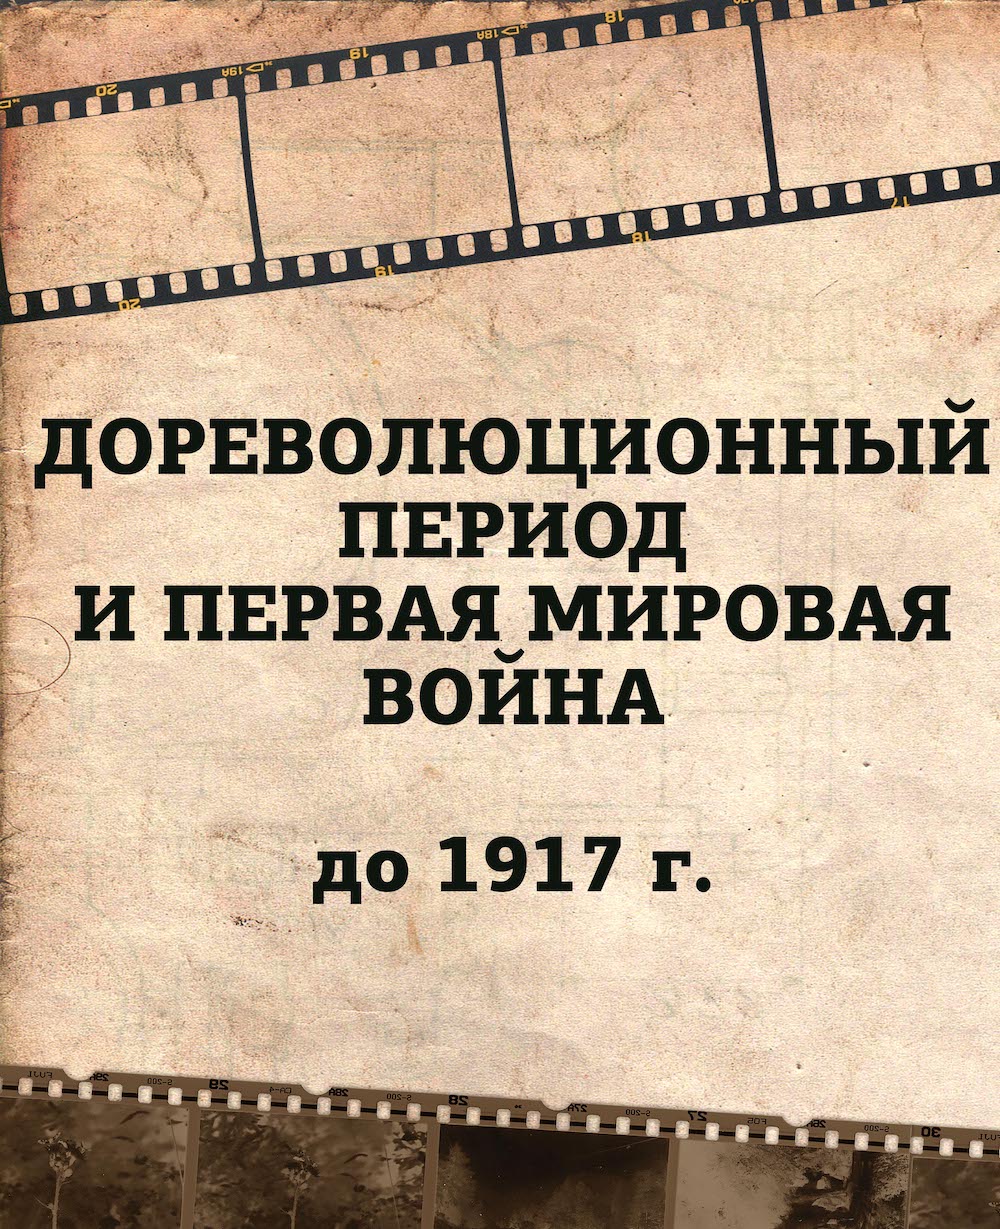 Дореволюционный период и Первая мировая война (до 1917 г.)